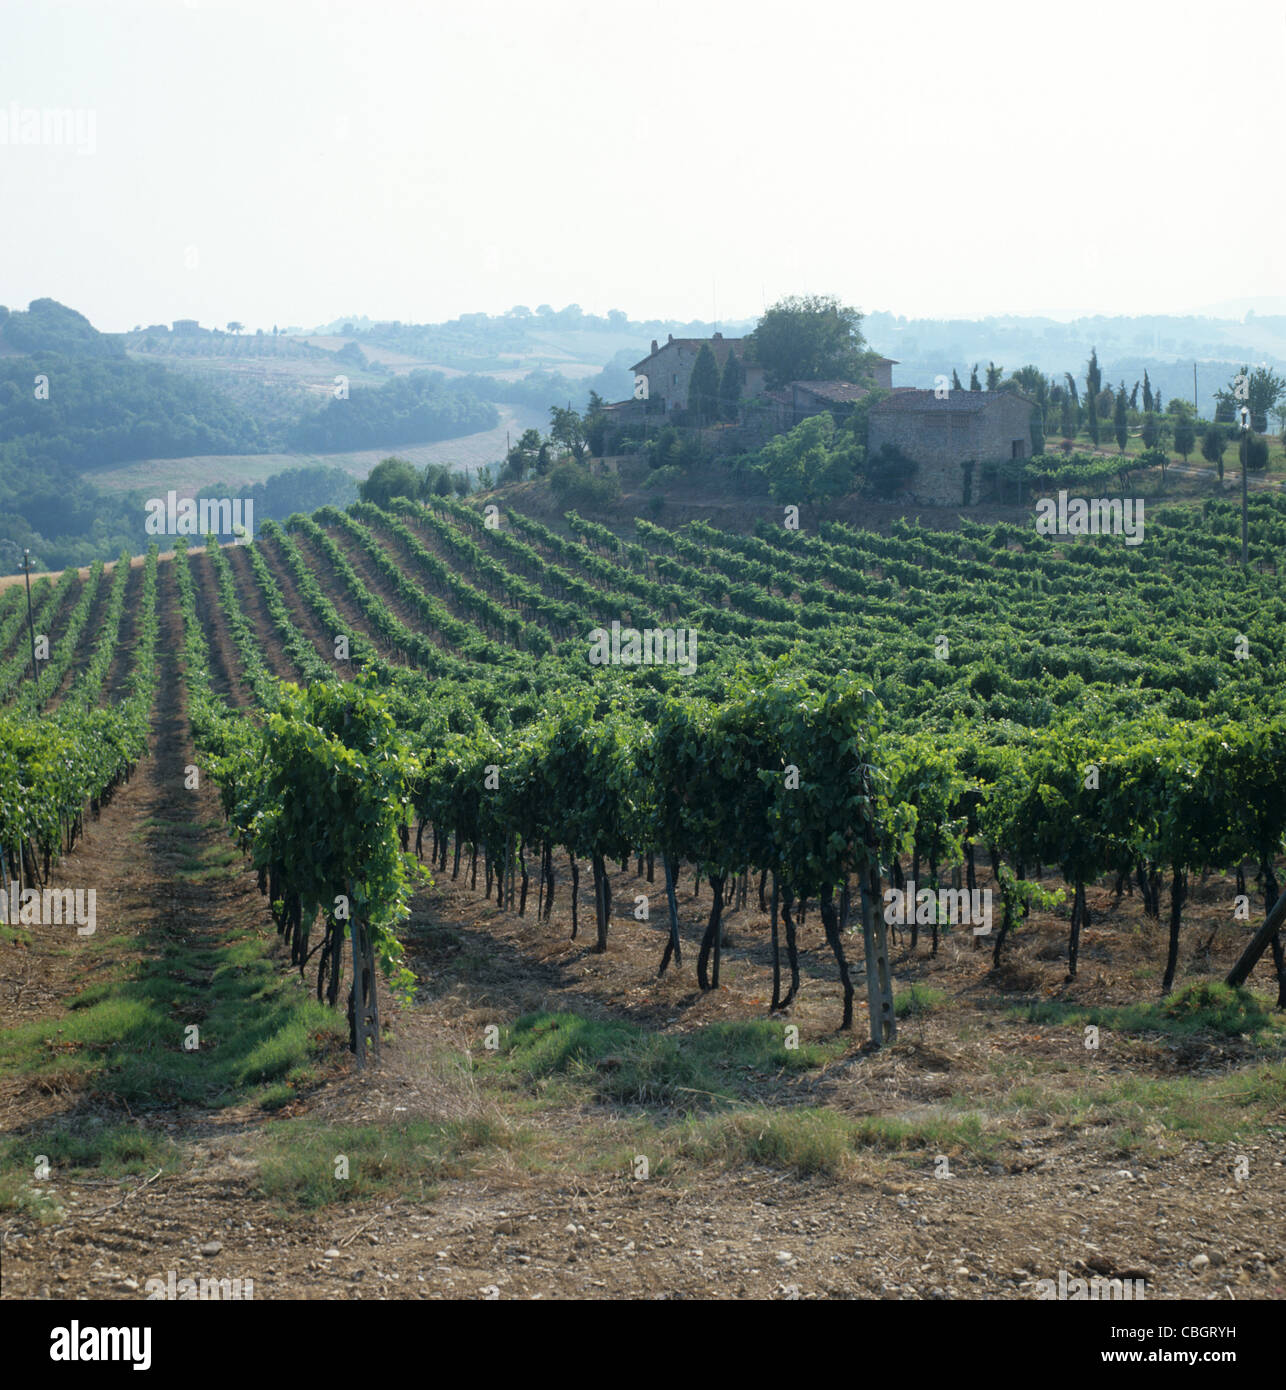 A Chianti vineyard near Sienna, Tuscany, Italy Stock Photo